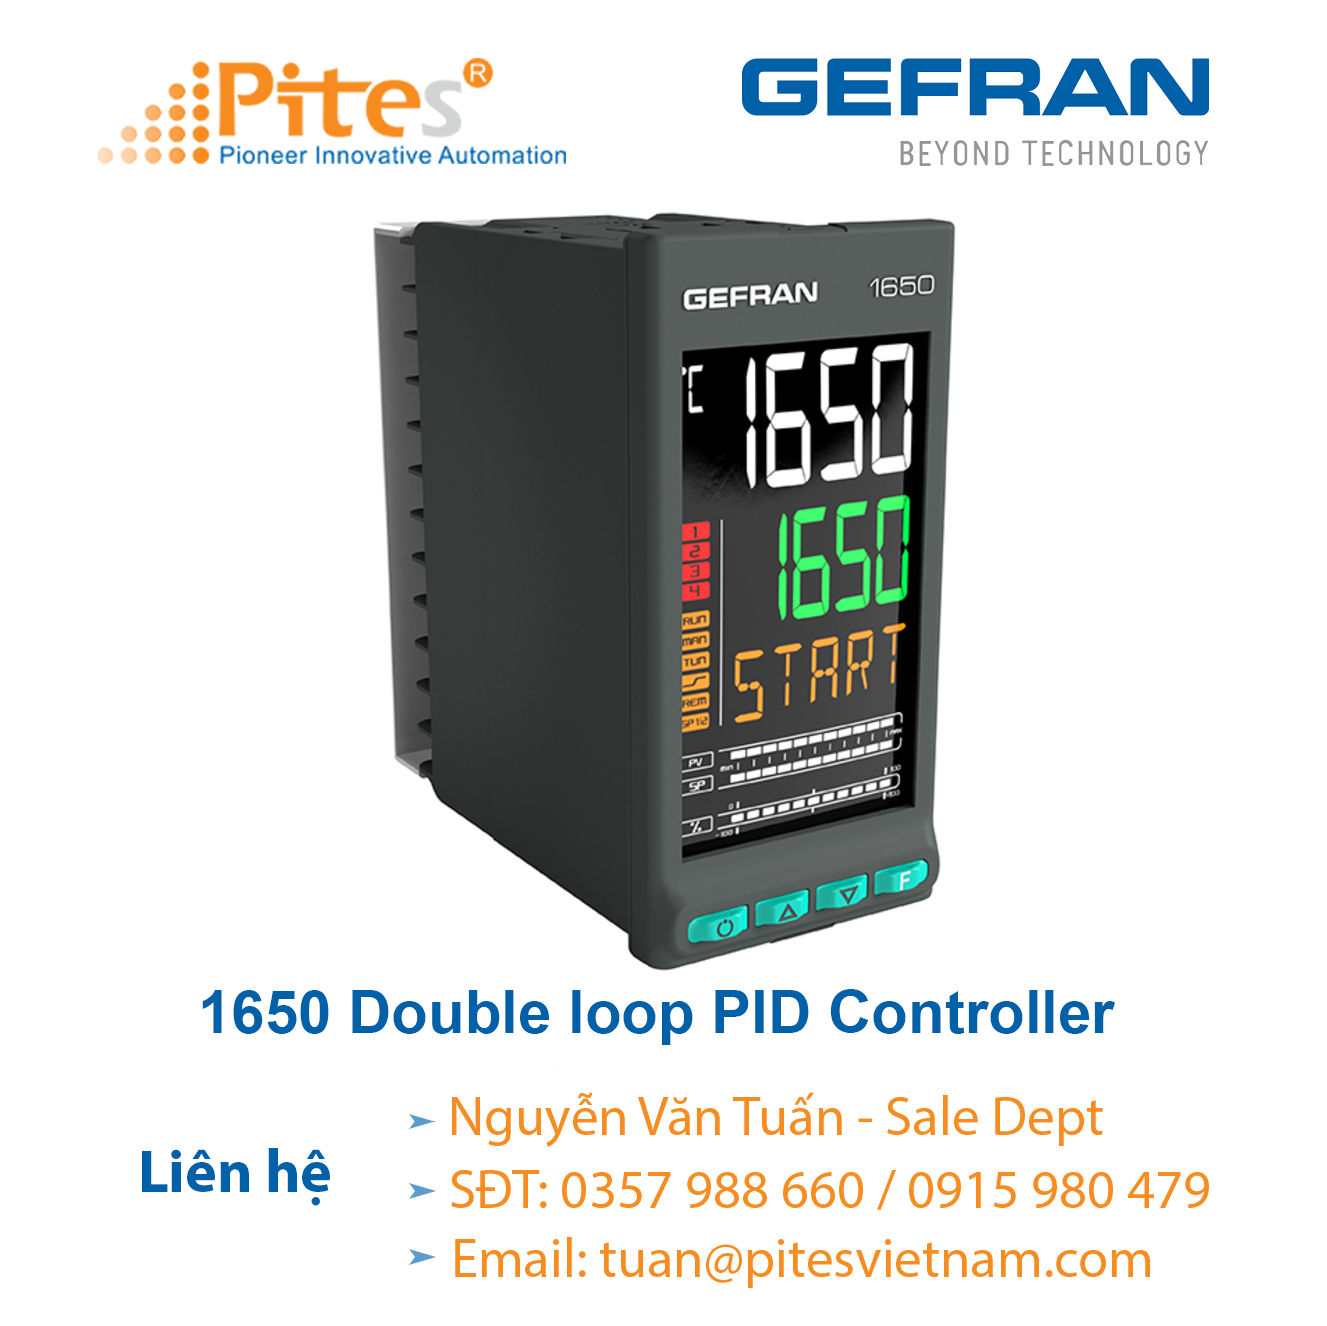 1650-double-loop-pid-controller-gefran-viet-nam.png